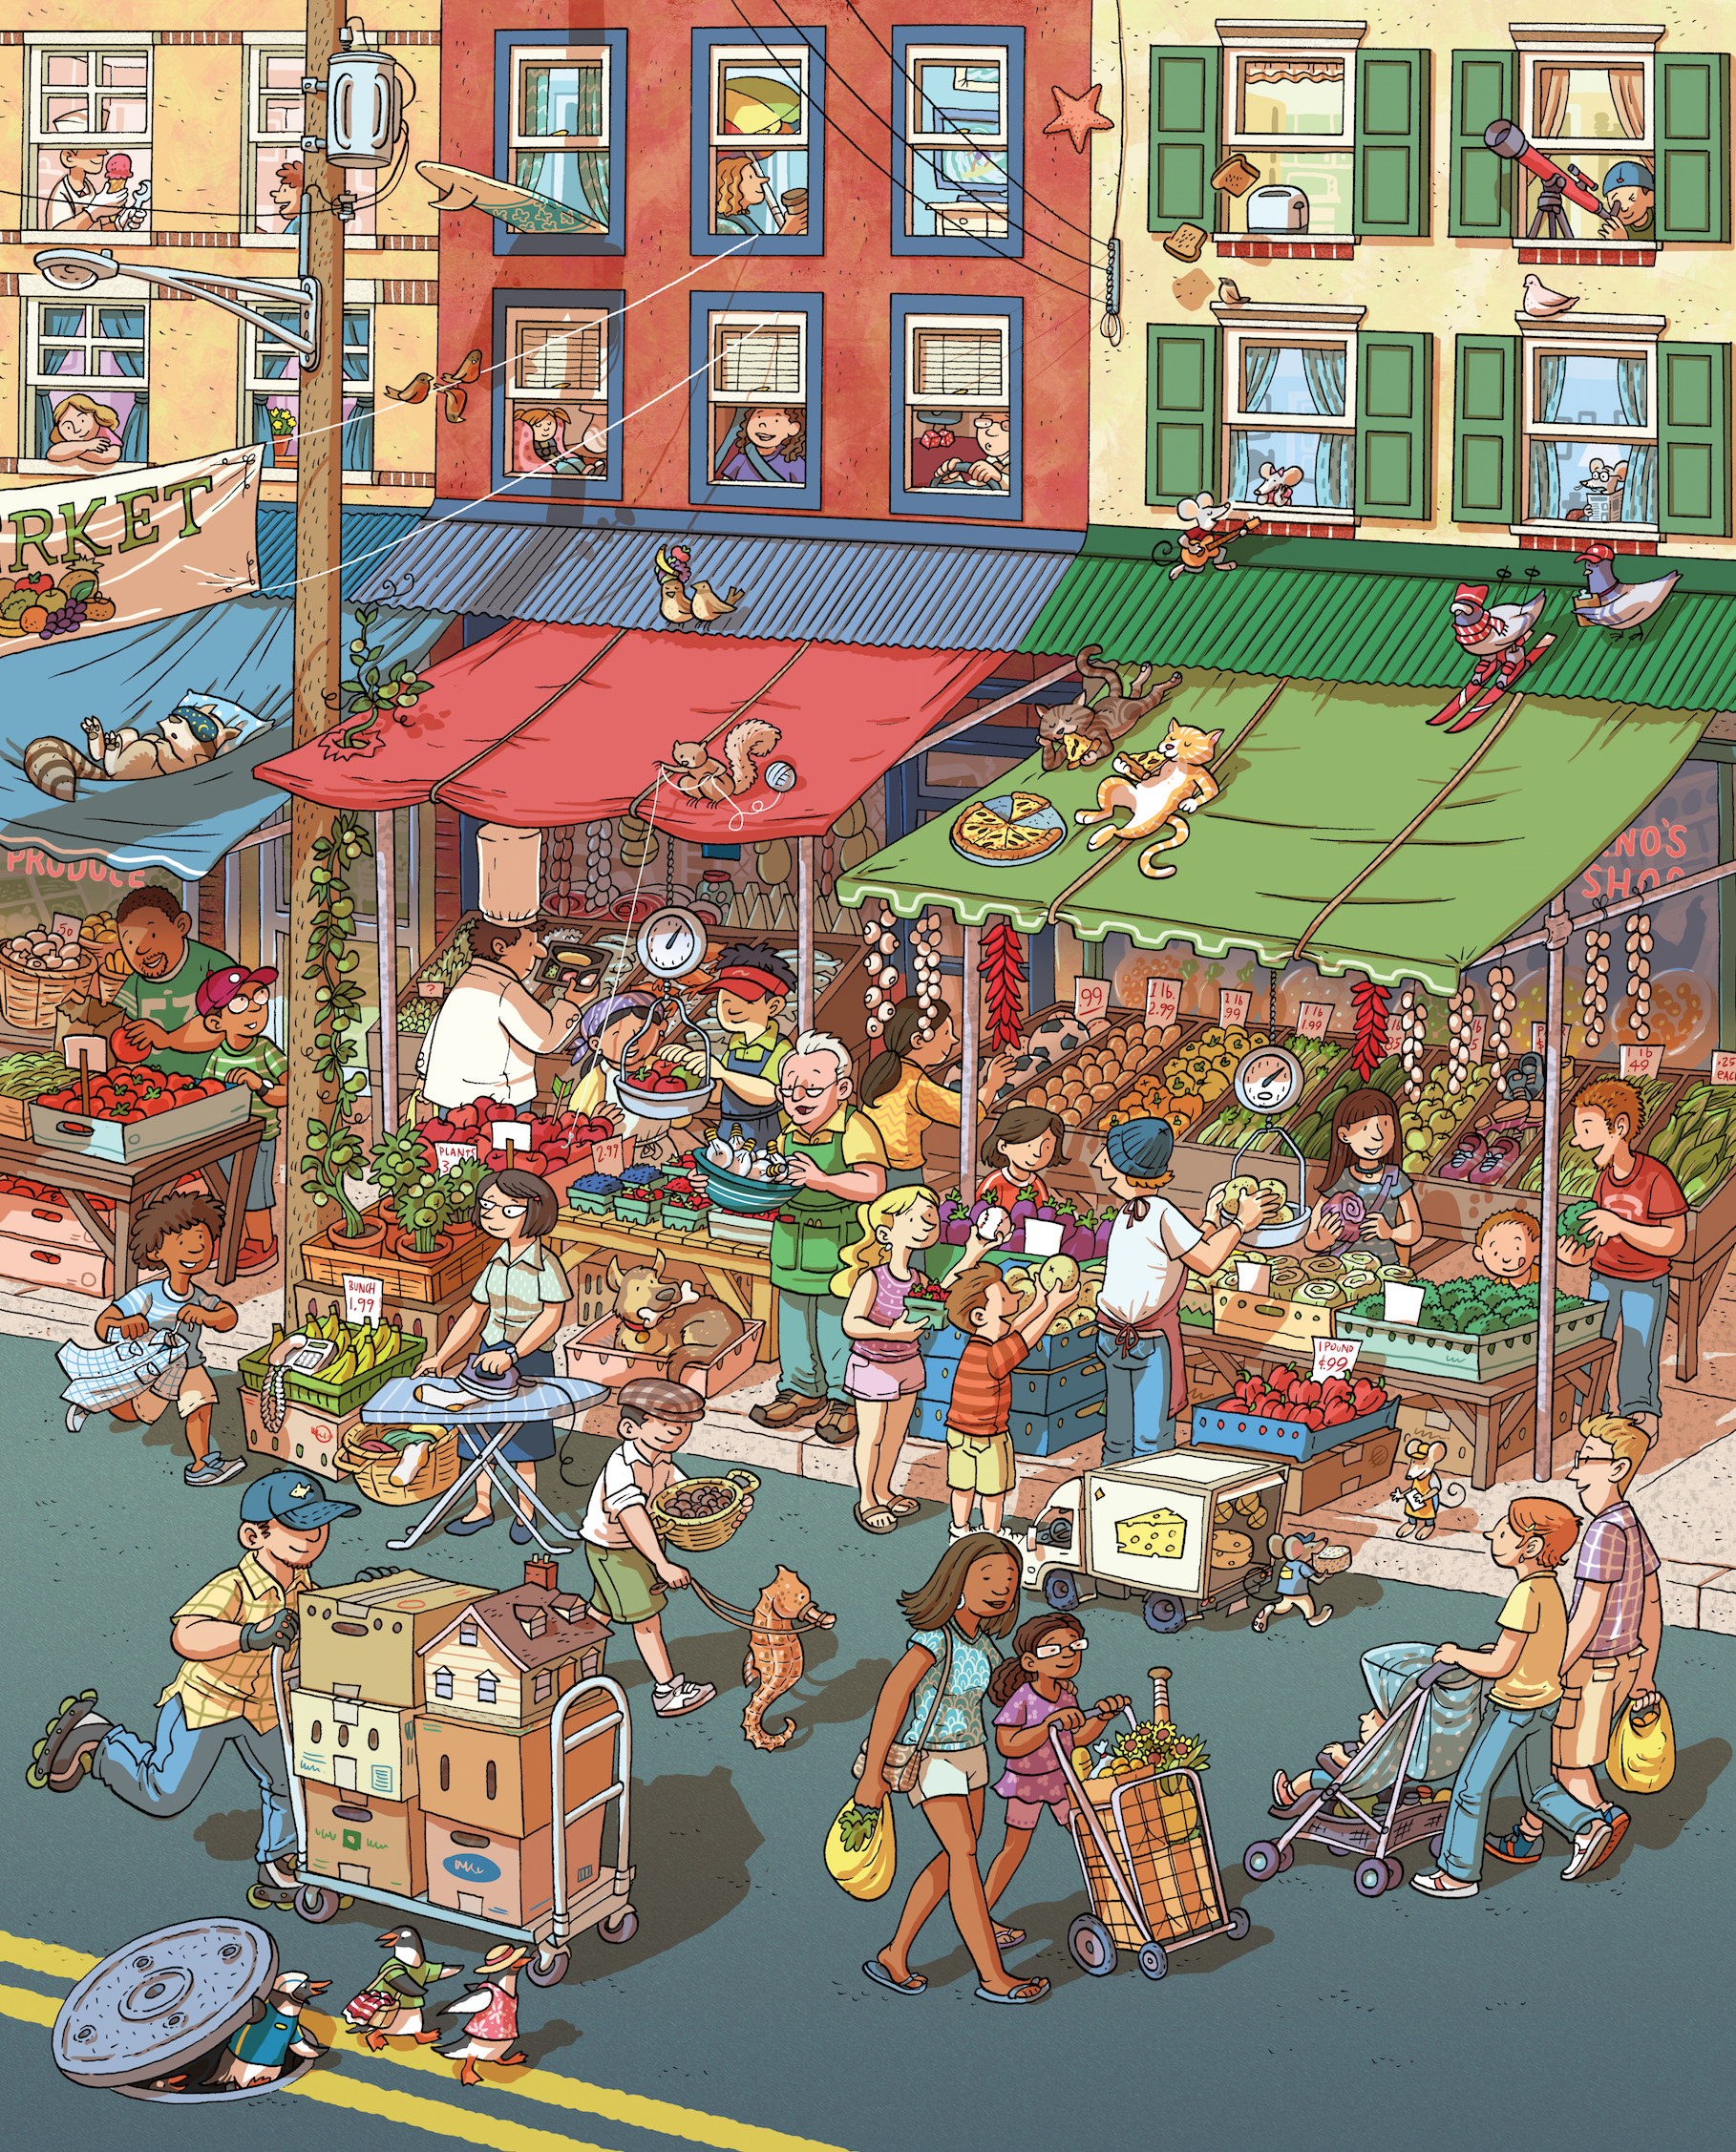 Рисунок с множеством деталей. Картинки для разглядывания. Рынок иллюстрация. Мультяшный город и рынок. Describing scenes